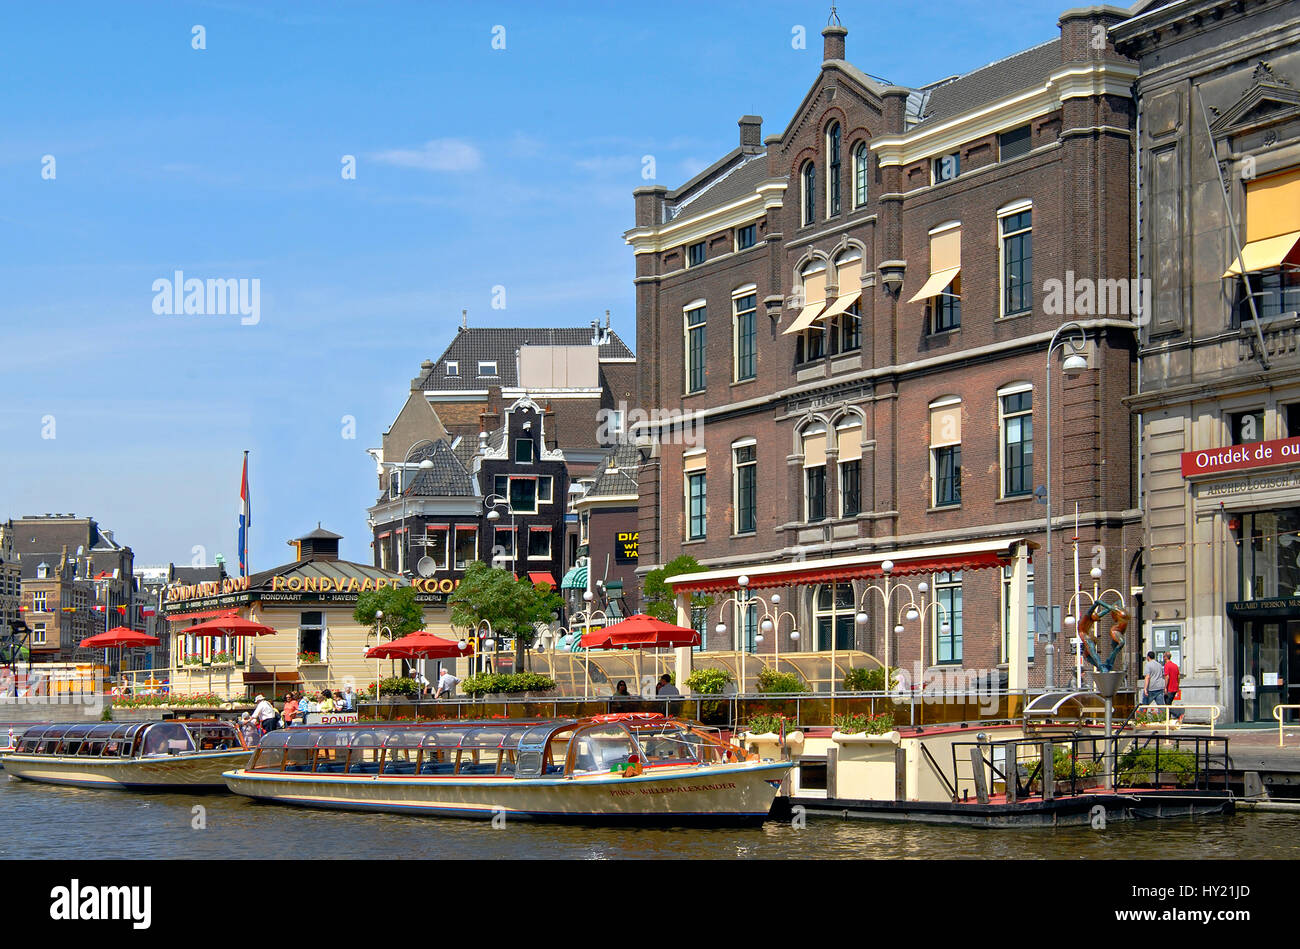 Image de bateaux touristiques typiques dans un canal d'eau dans le centre-ville d'Amsterdam, Hollande. Banque D'Images